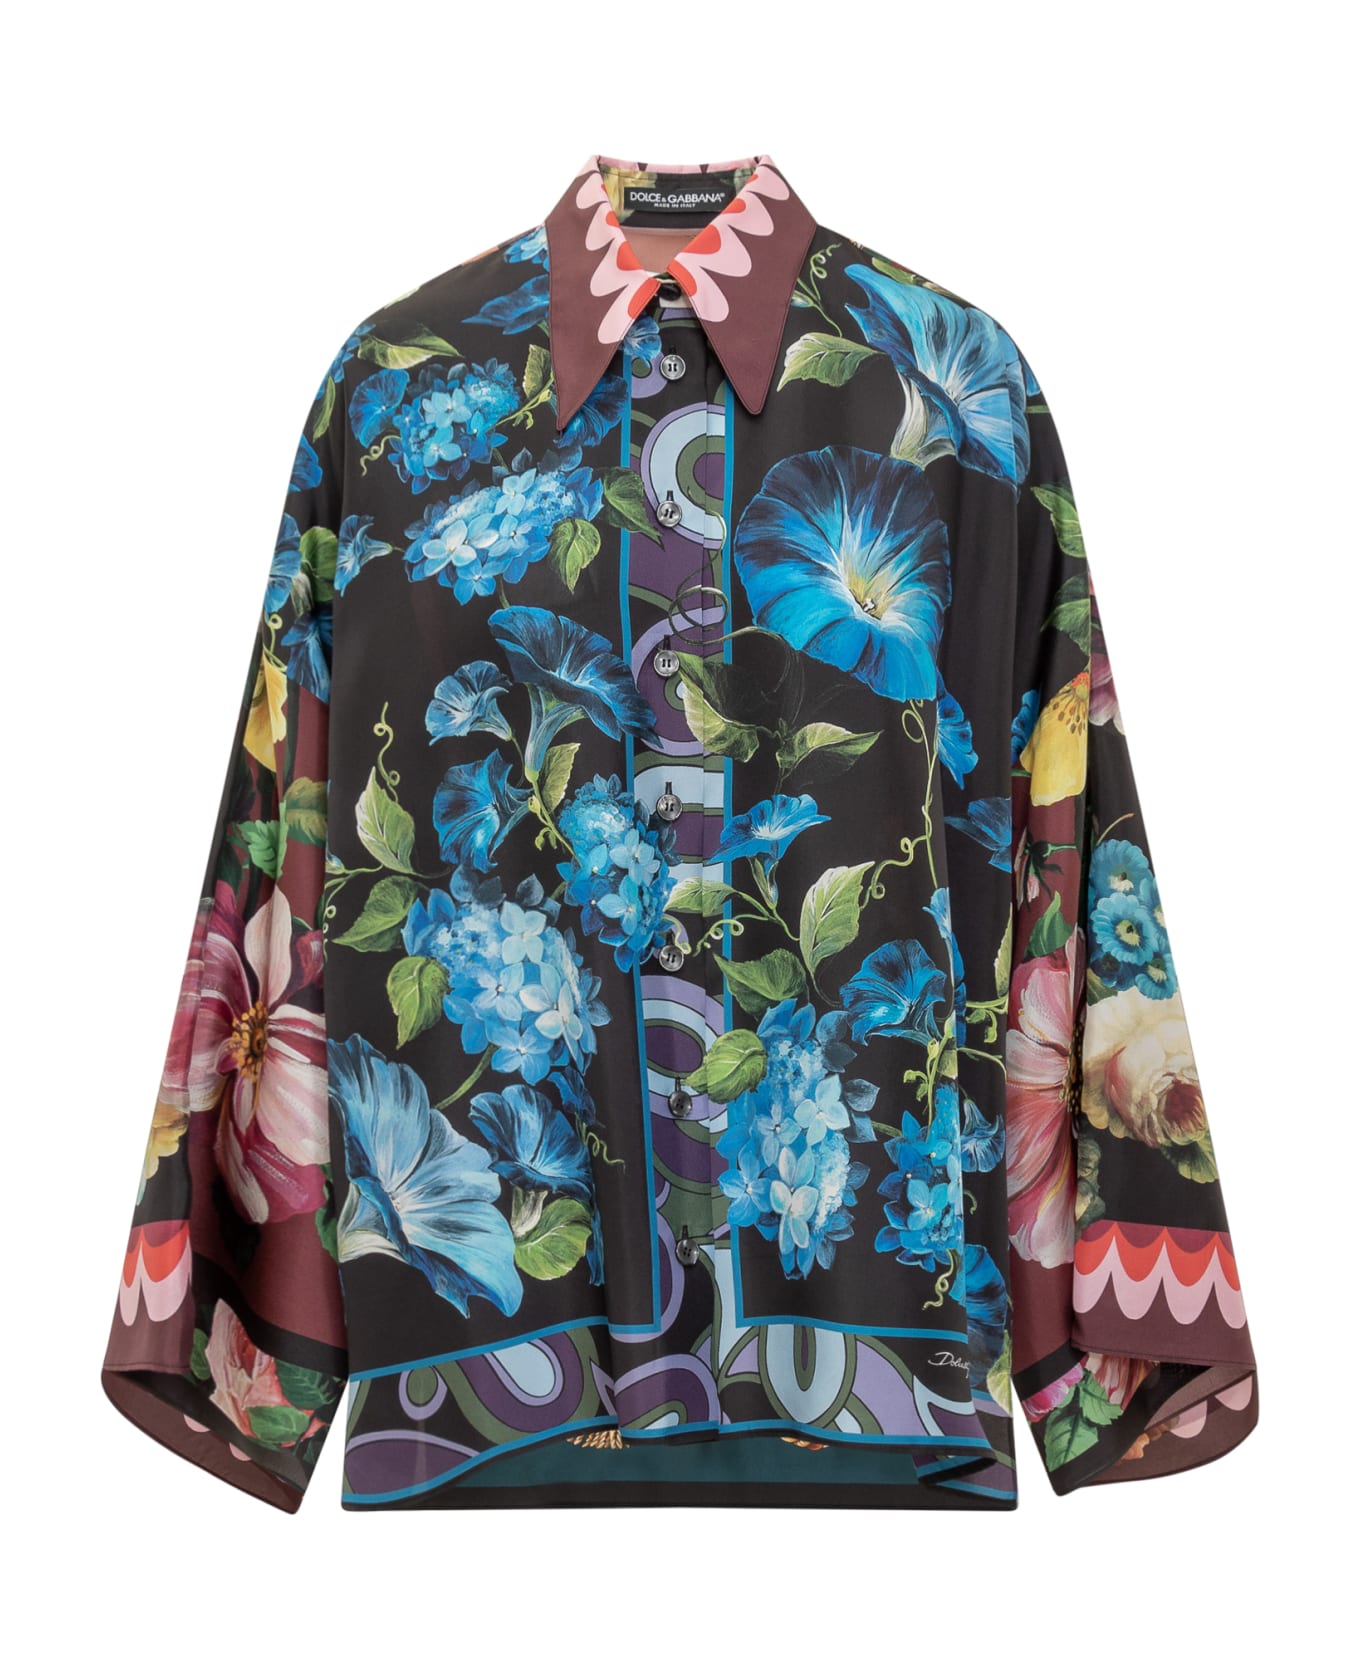 Dolce & Gabbana Floral Print Shirt - Variante Abbinata ブラウス